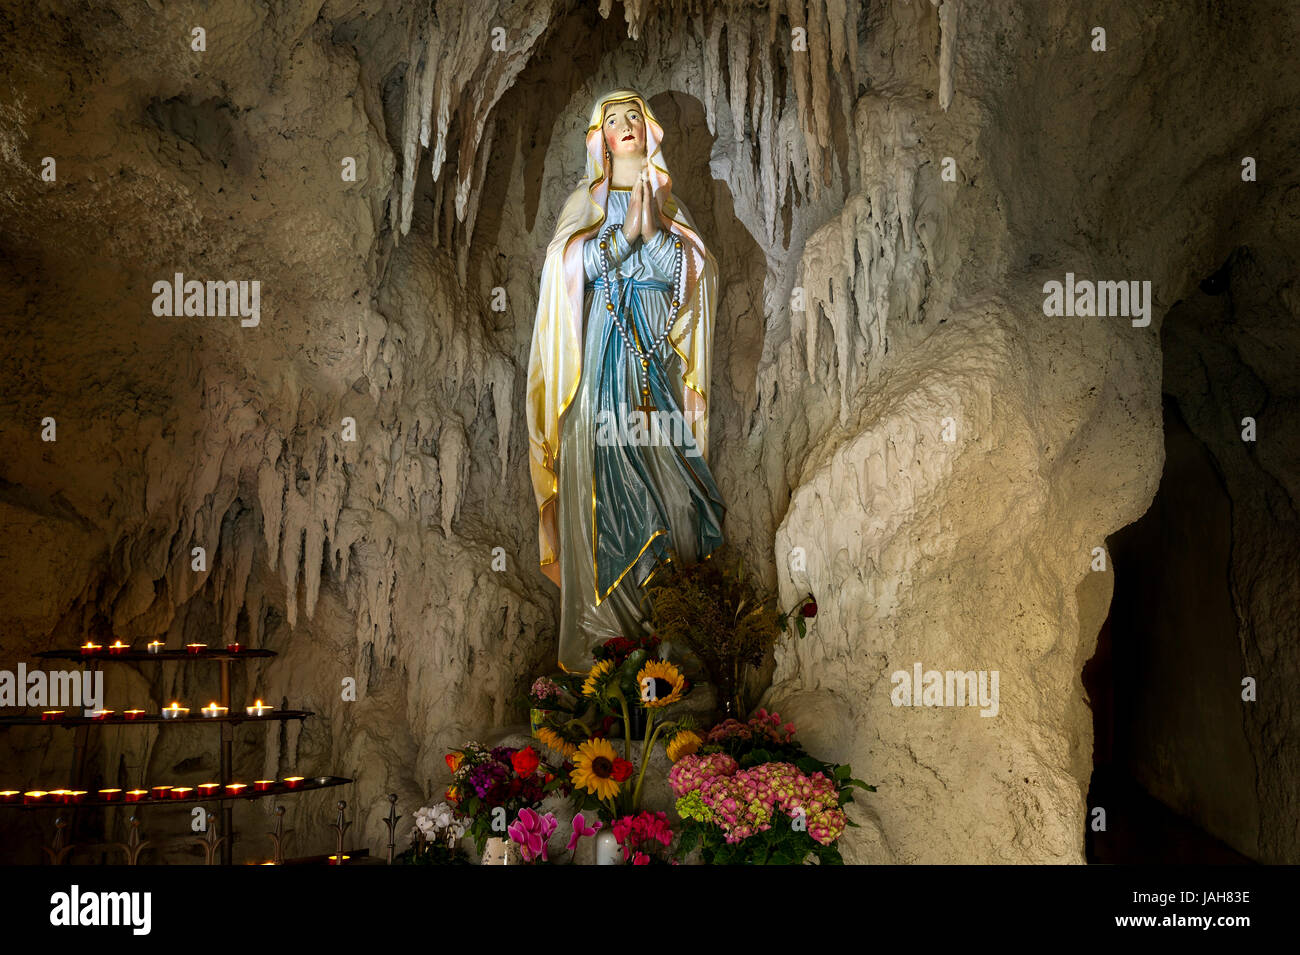 Grotte de Lourdes avec une statue de la Vierge Marie, la reconstruction de la grotte de Massabielle, près de Lourdes, l'église paroissiale de St. Banque D'Images